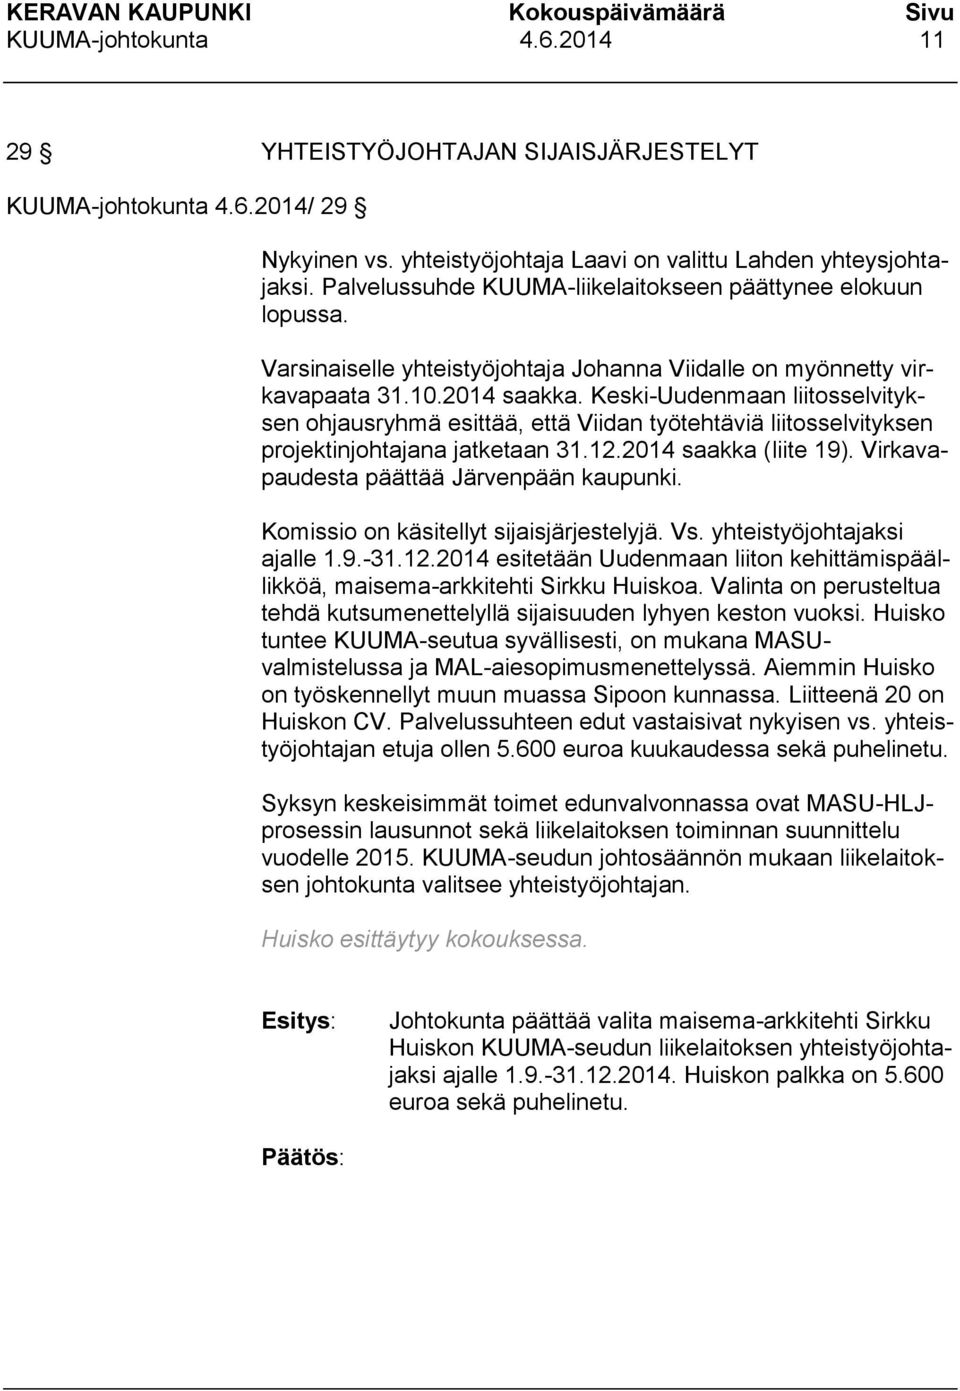 Keski-Uudenmaan liitosselvityksen ohjausryhmä esittää, että Viidan työtehtäviä liitosselvityksen projektinjohtajana jatketaan 31.12.2014 saakka (liite 19). Virkavapaudesta päättää Järvenpään kaupunki.